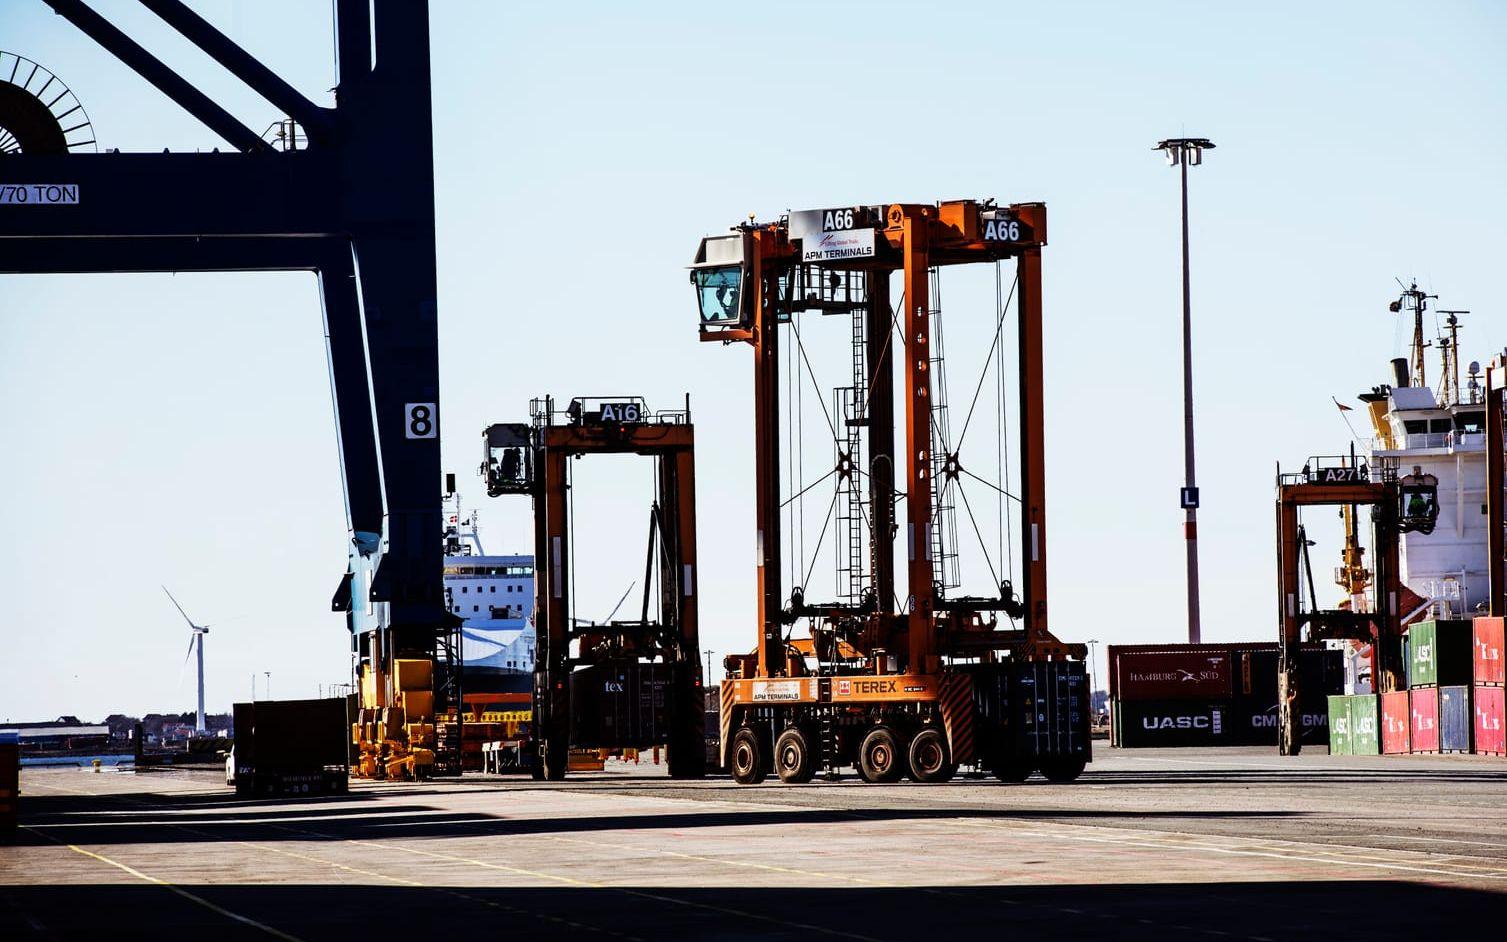 Under året har Stora enso, som skickar drygt 800 containrar i veckan genom Göteborgs hamn, fått se sig om efter andra möjliga transportvägar. Bild: Stefan Berg